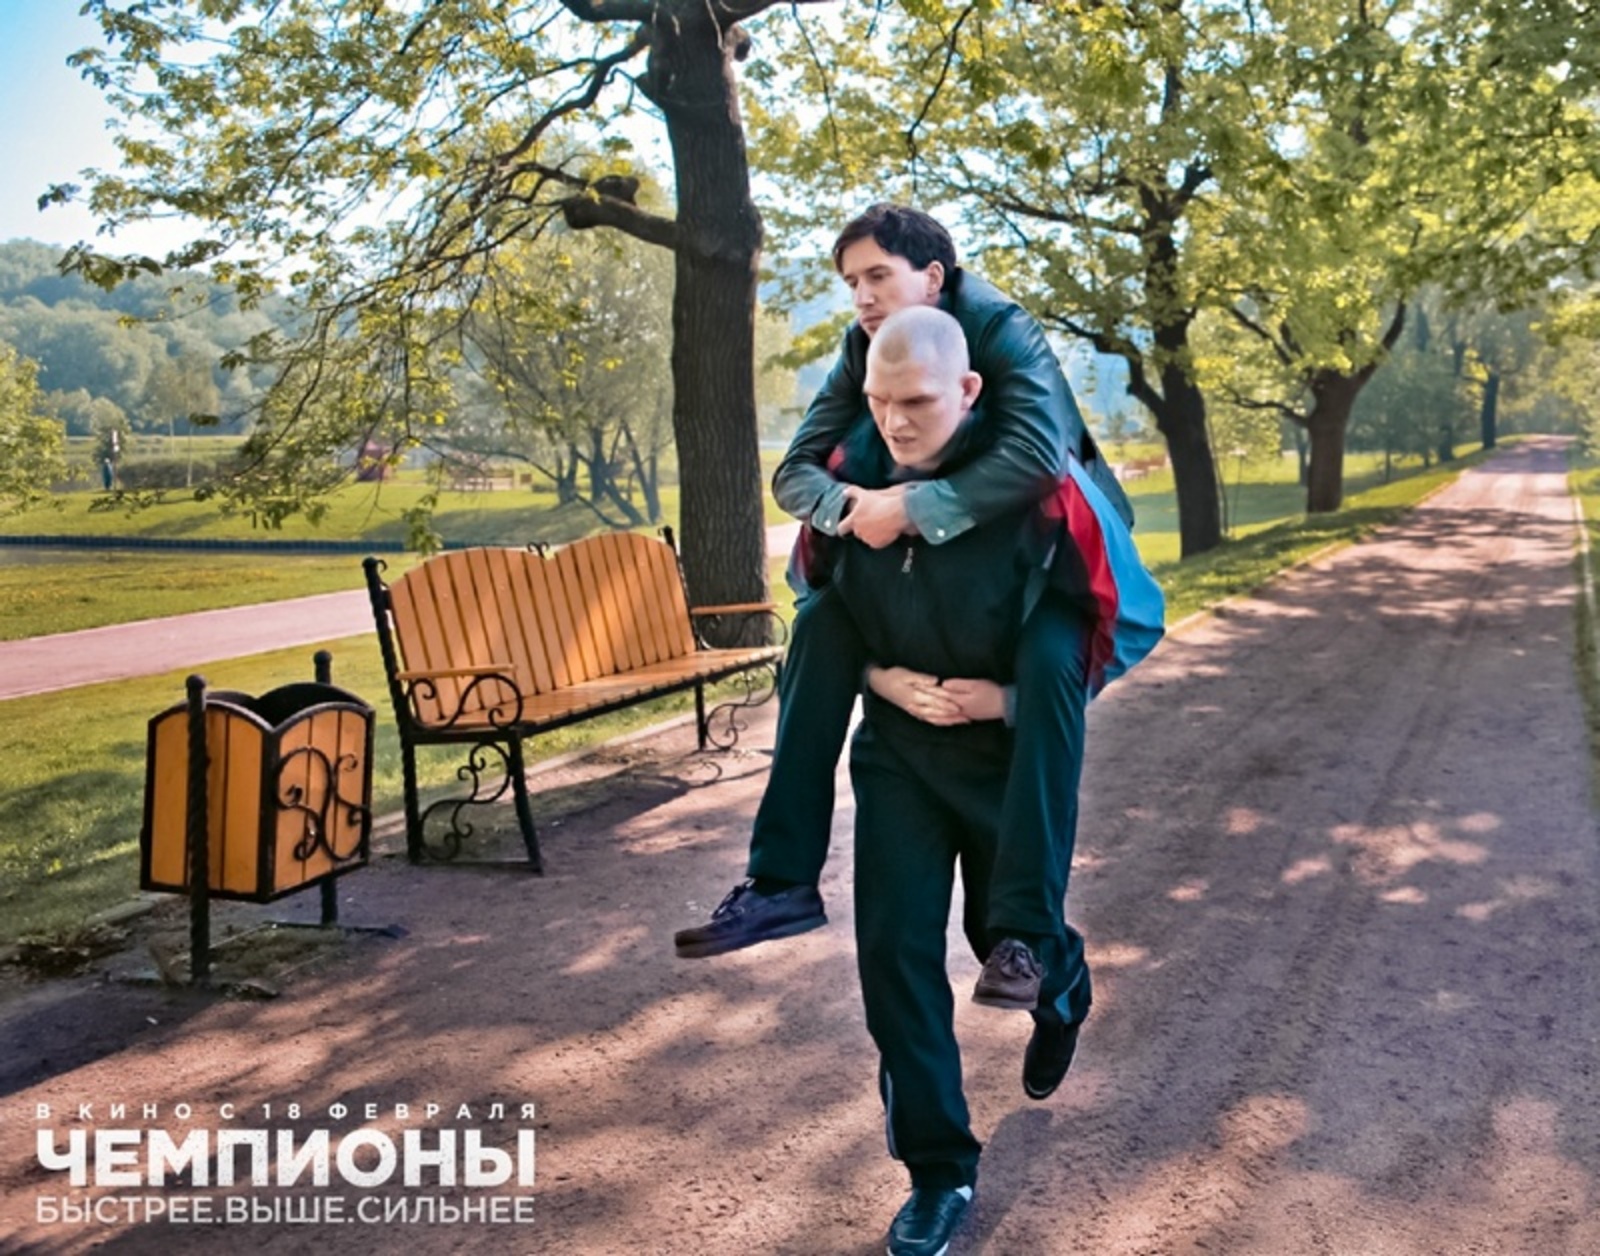 Фото с сайта www.kinopoisk.ru.